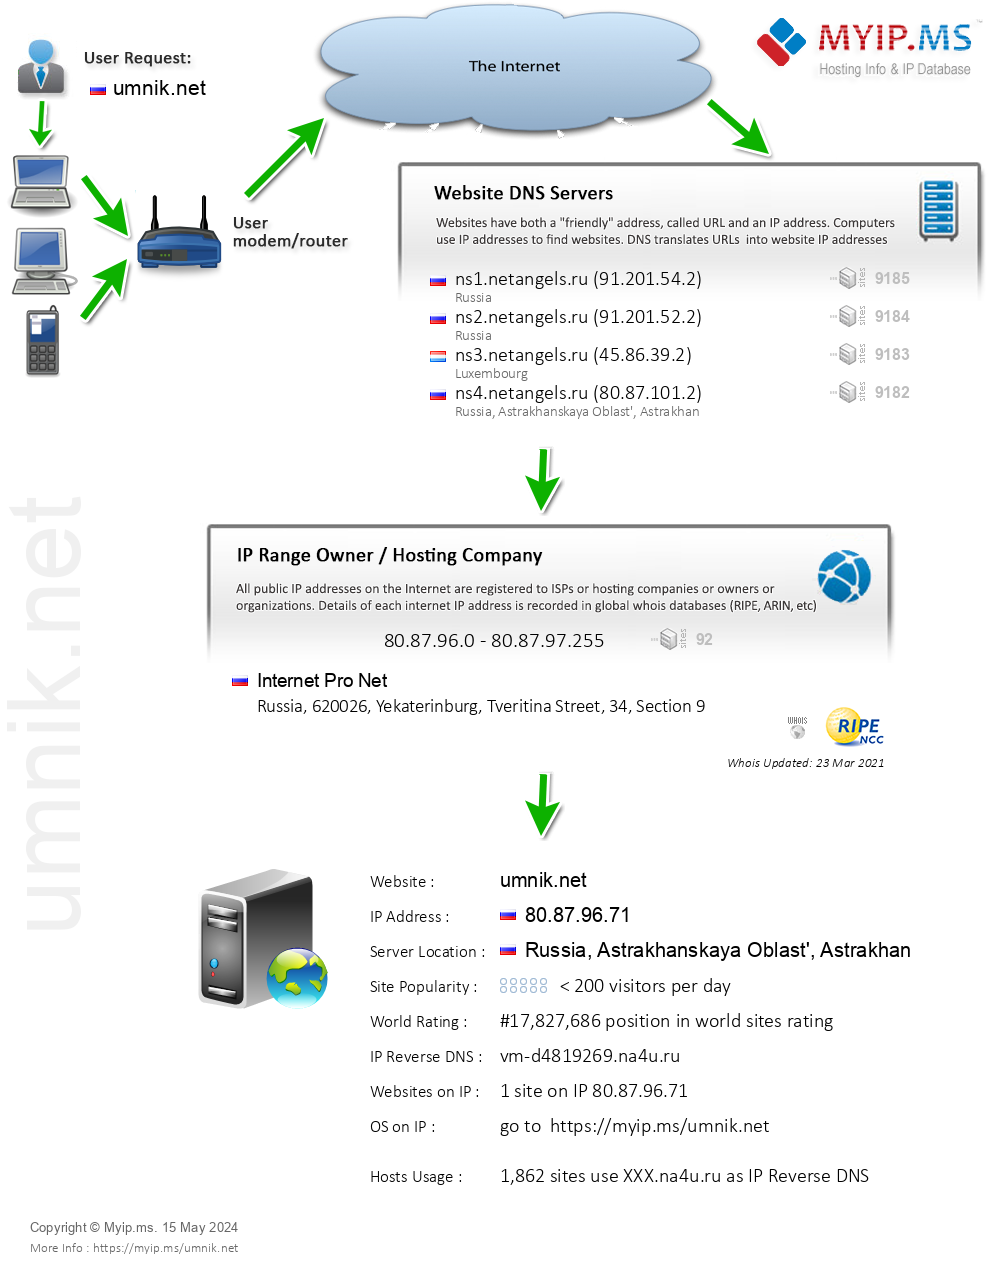 Umnik.net - Website Hosting Visual IP Diagram